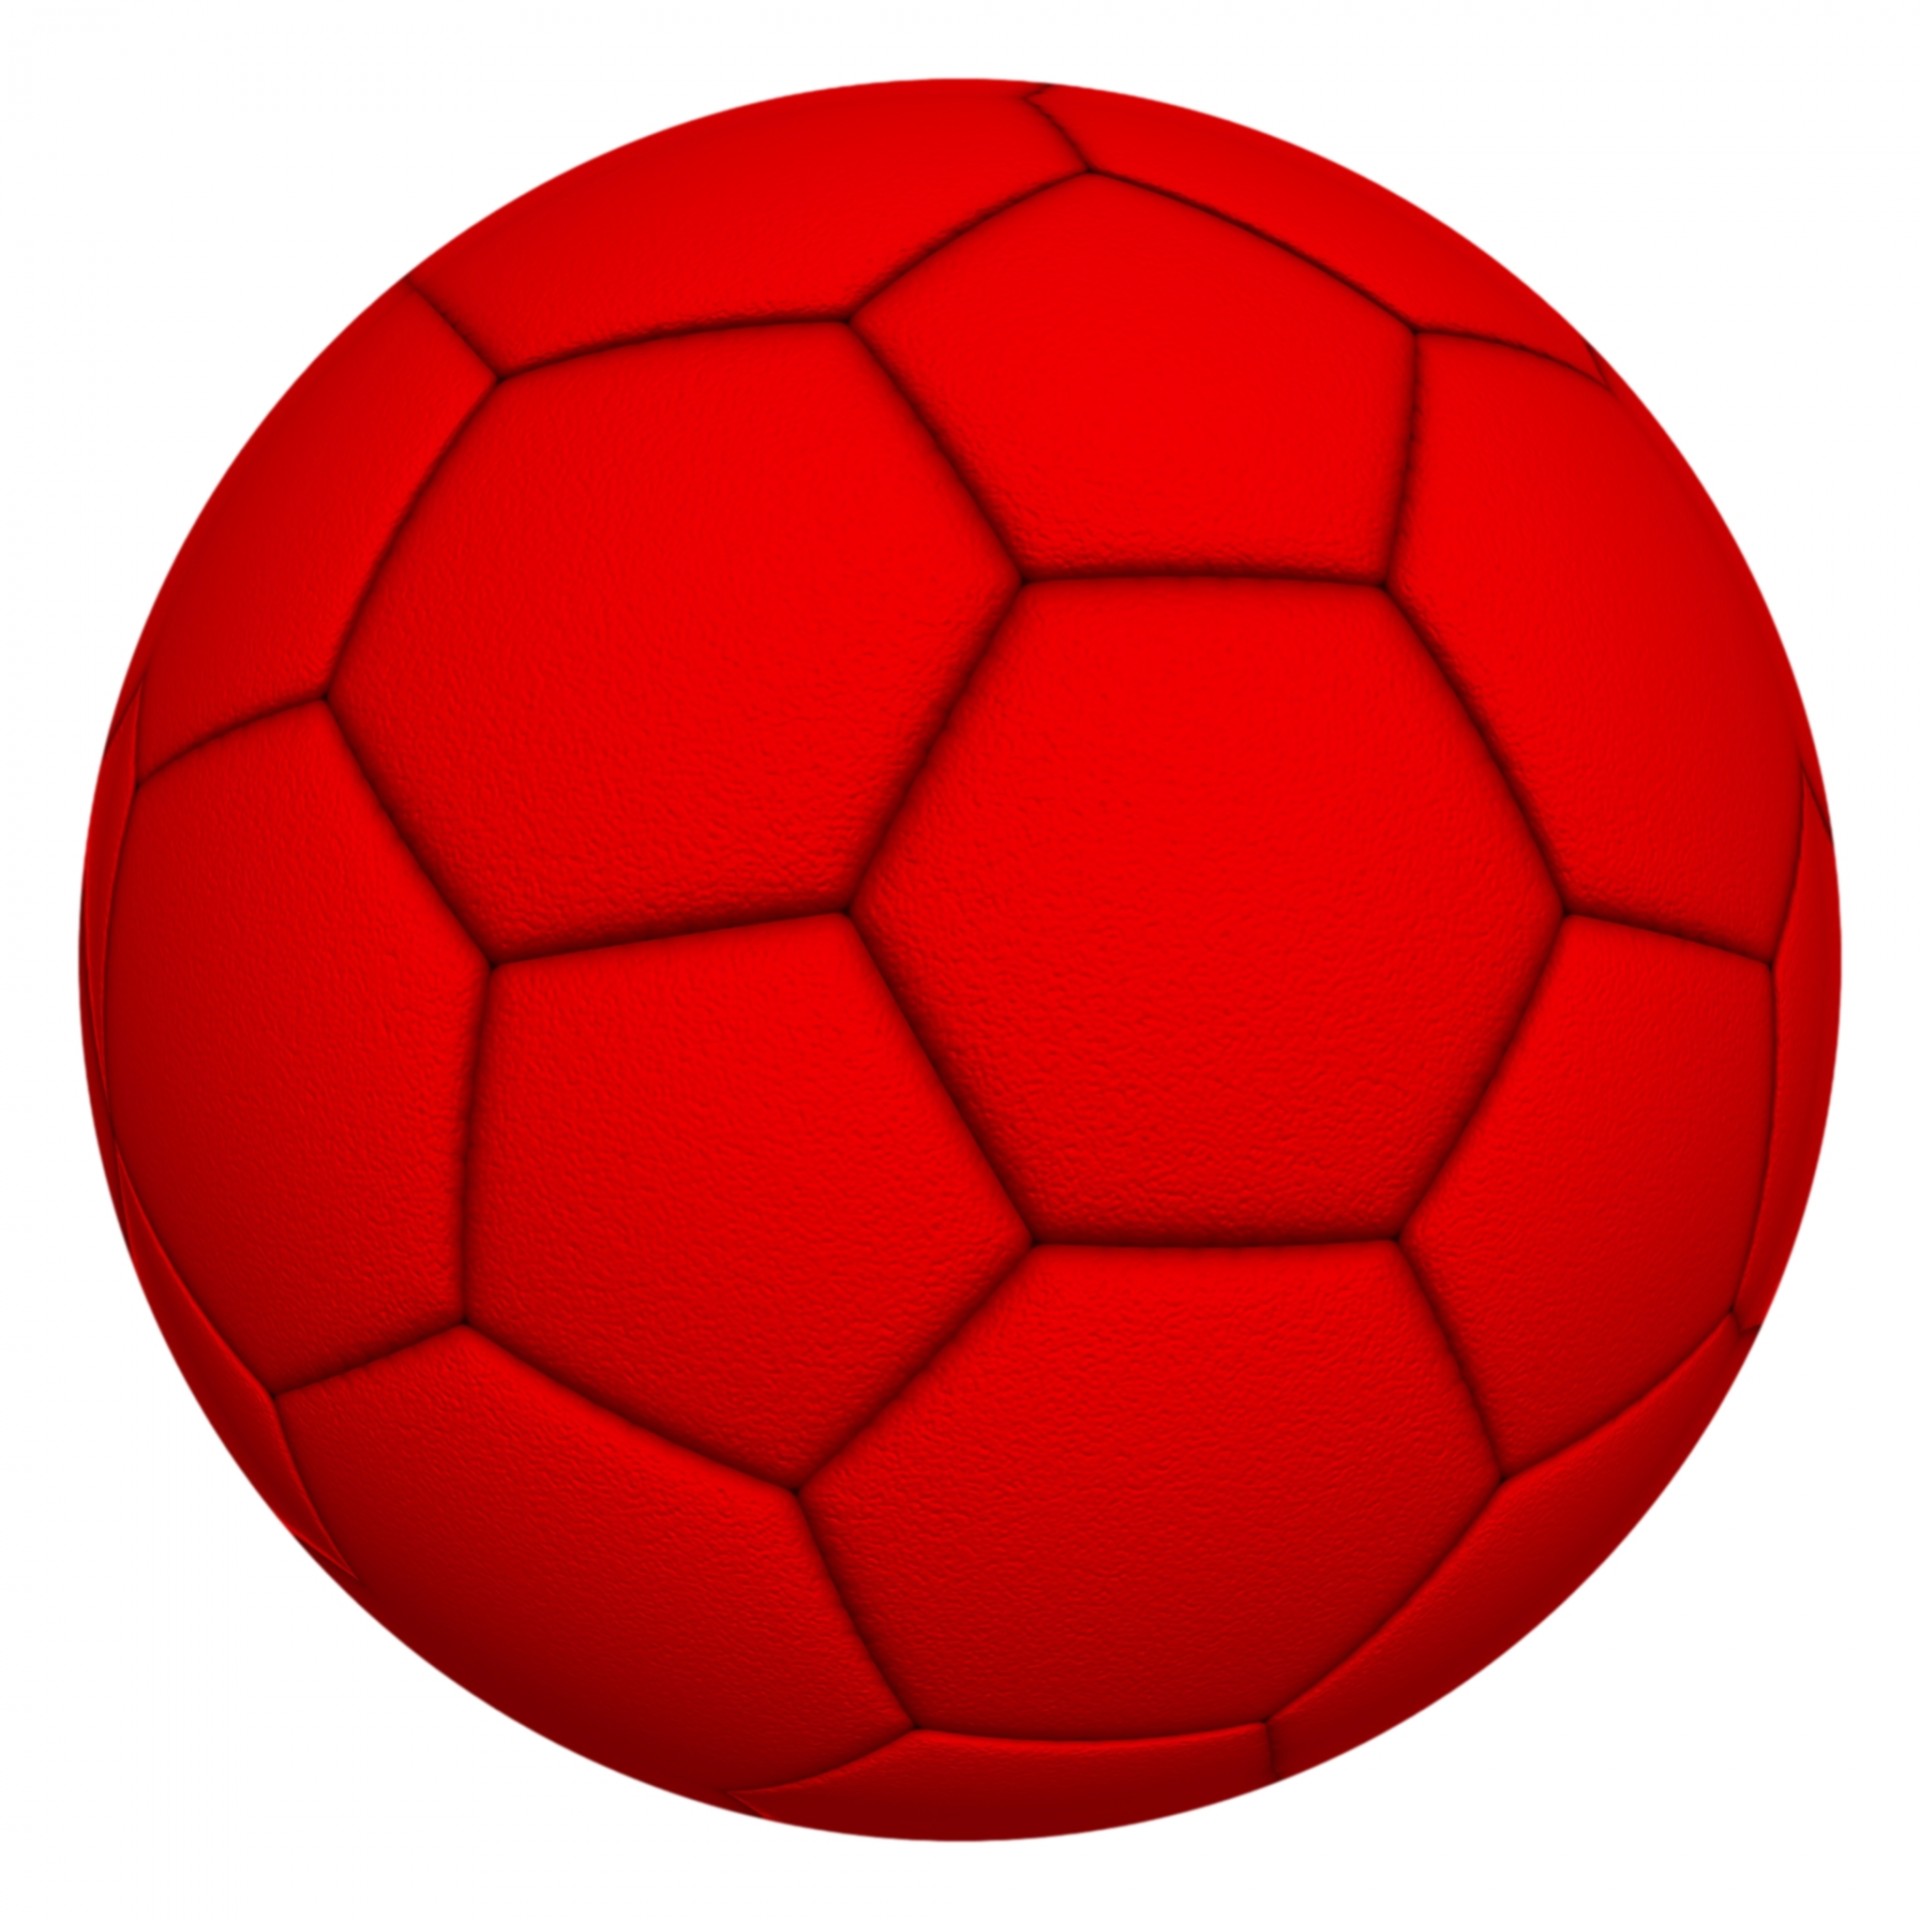 Ball part. Красный мяч. Красный футбольный мяч. Предметы красного цвета. Мячик футбольный красный.